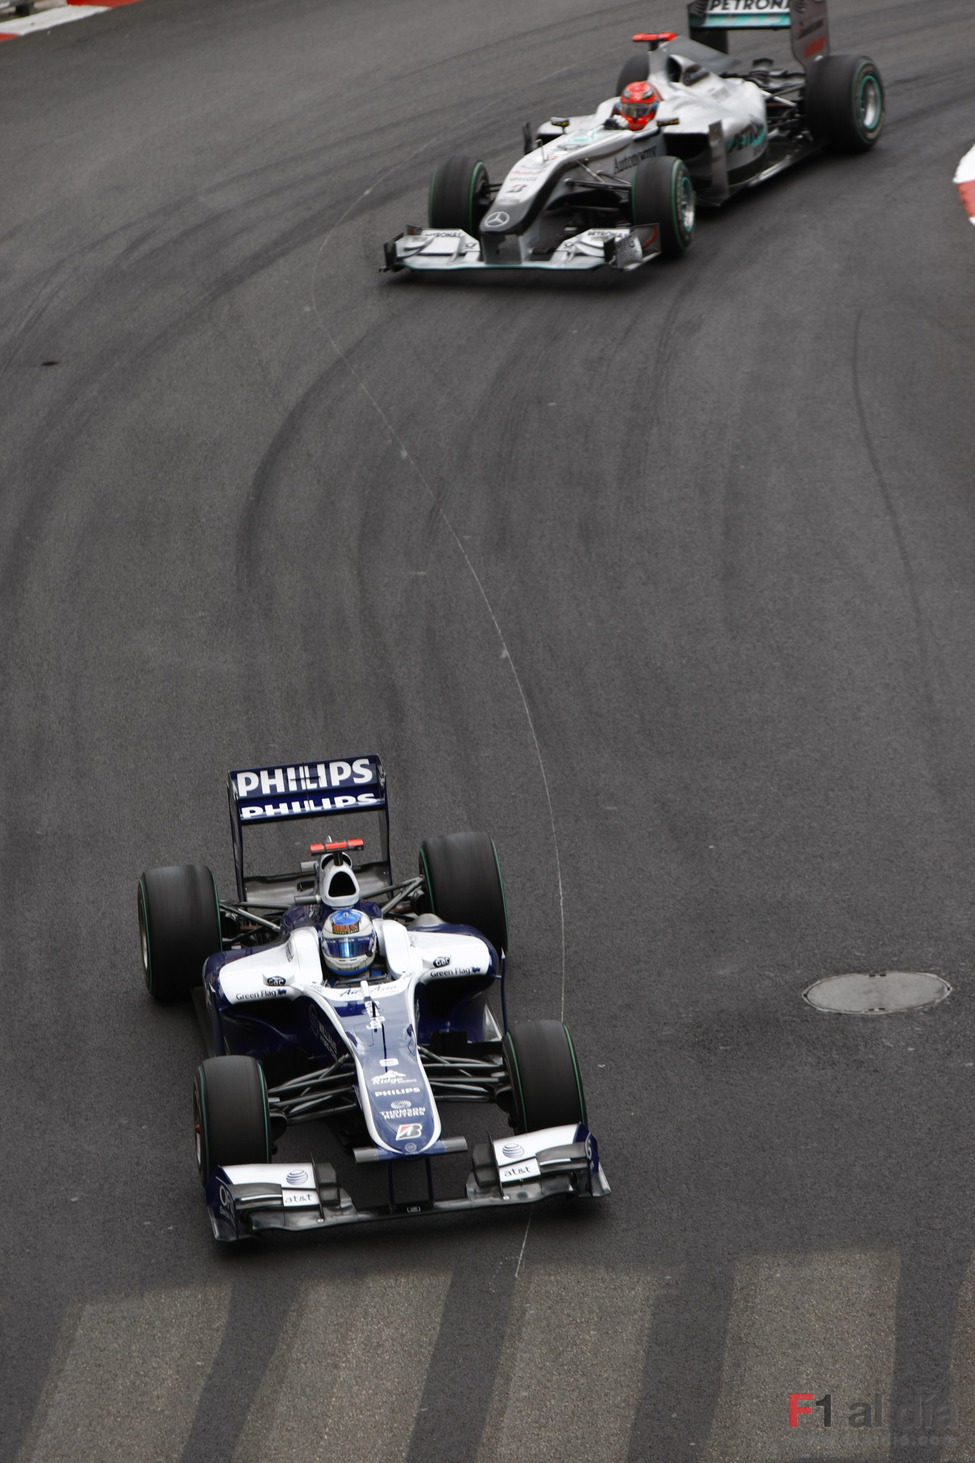 Rubens perseguido por Schumacher